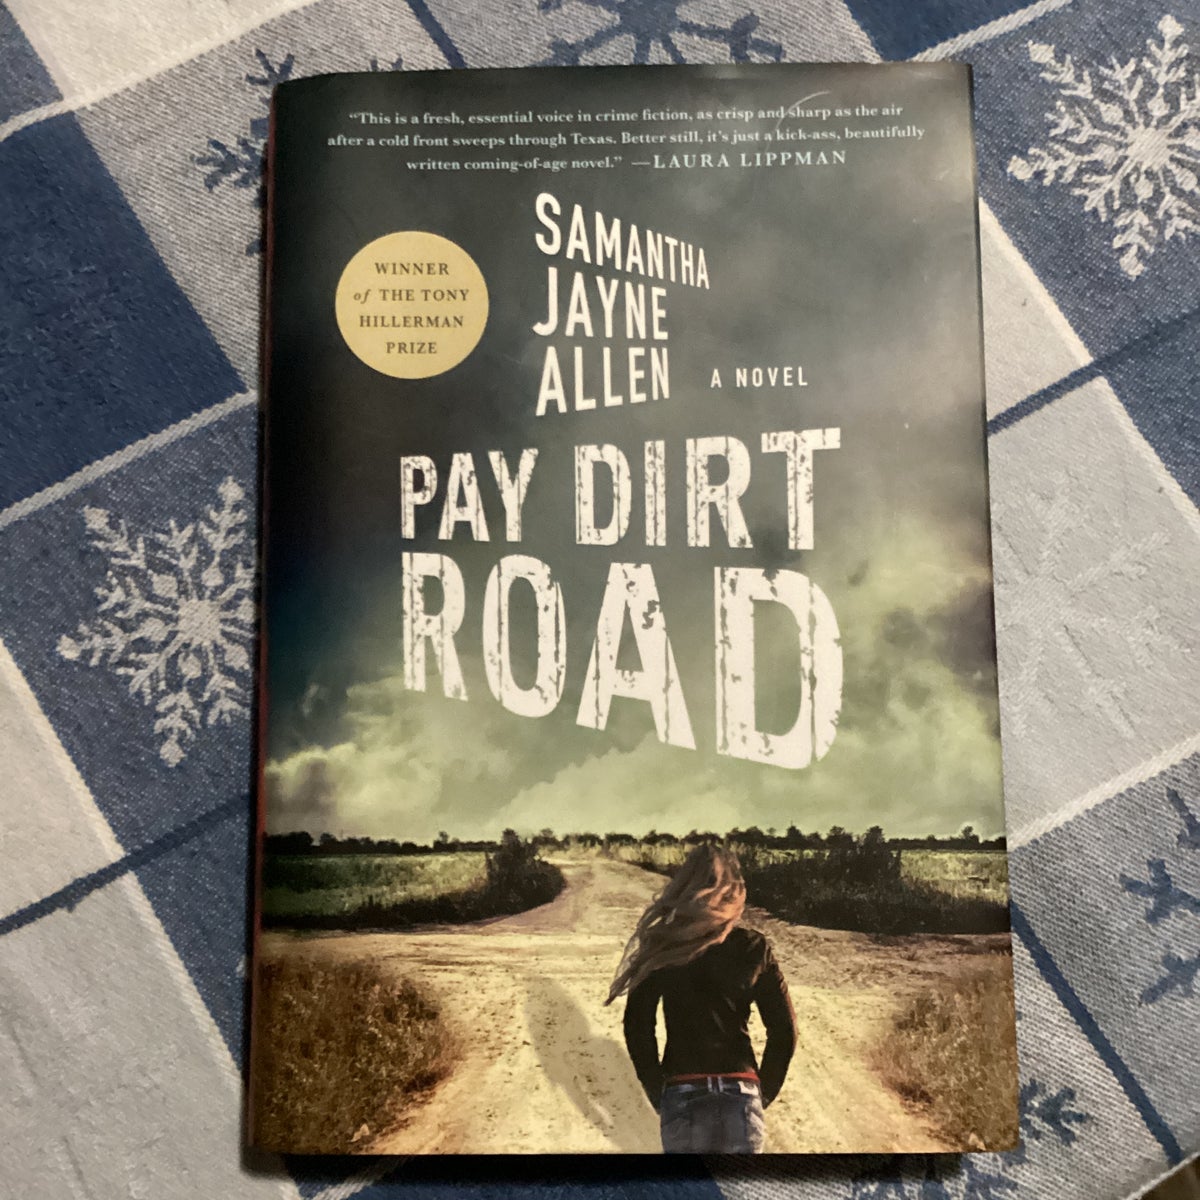 Pay Dirt [Book]